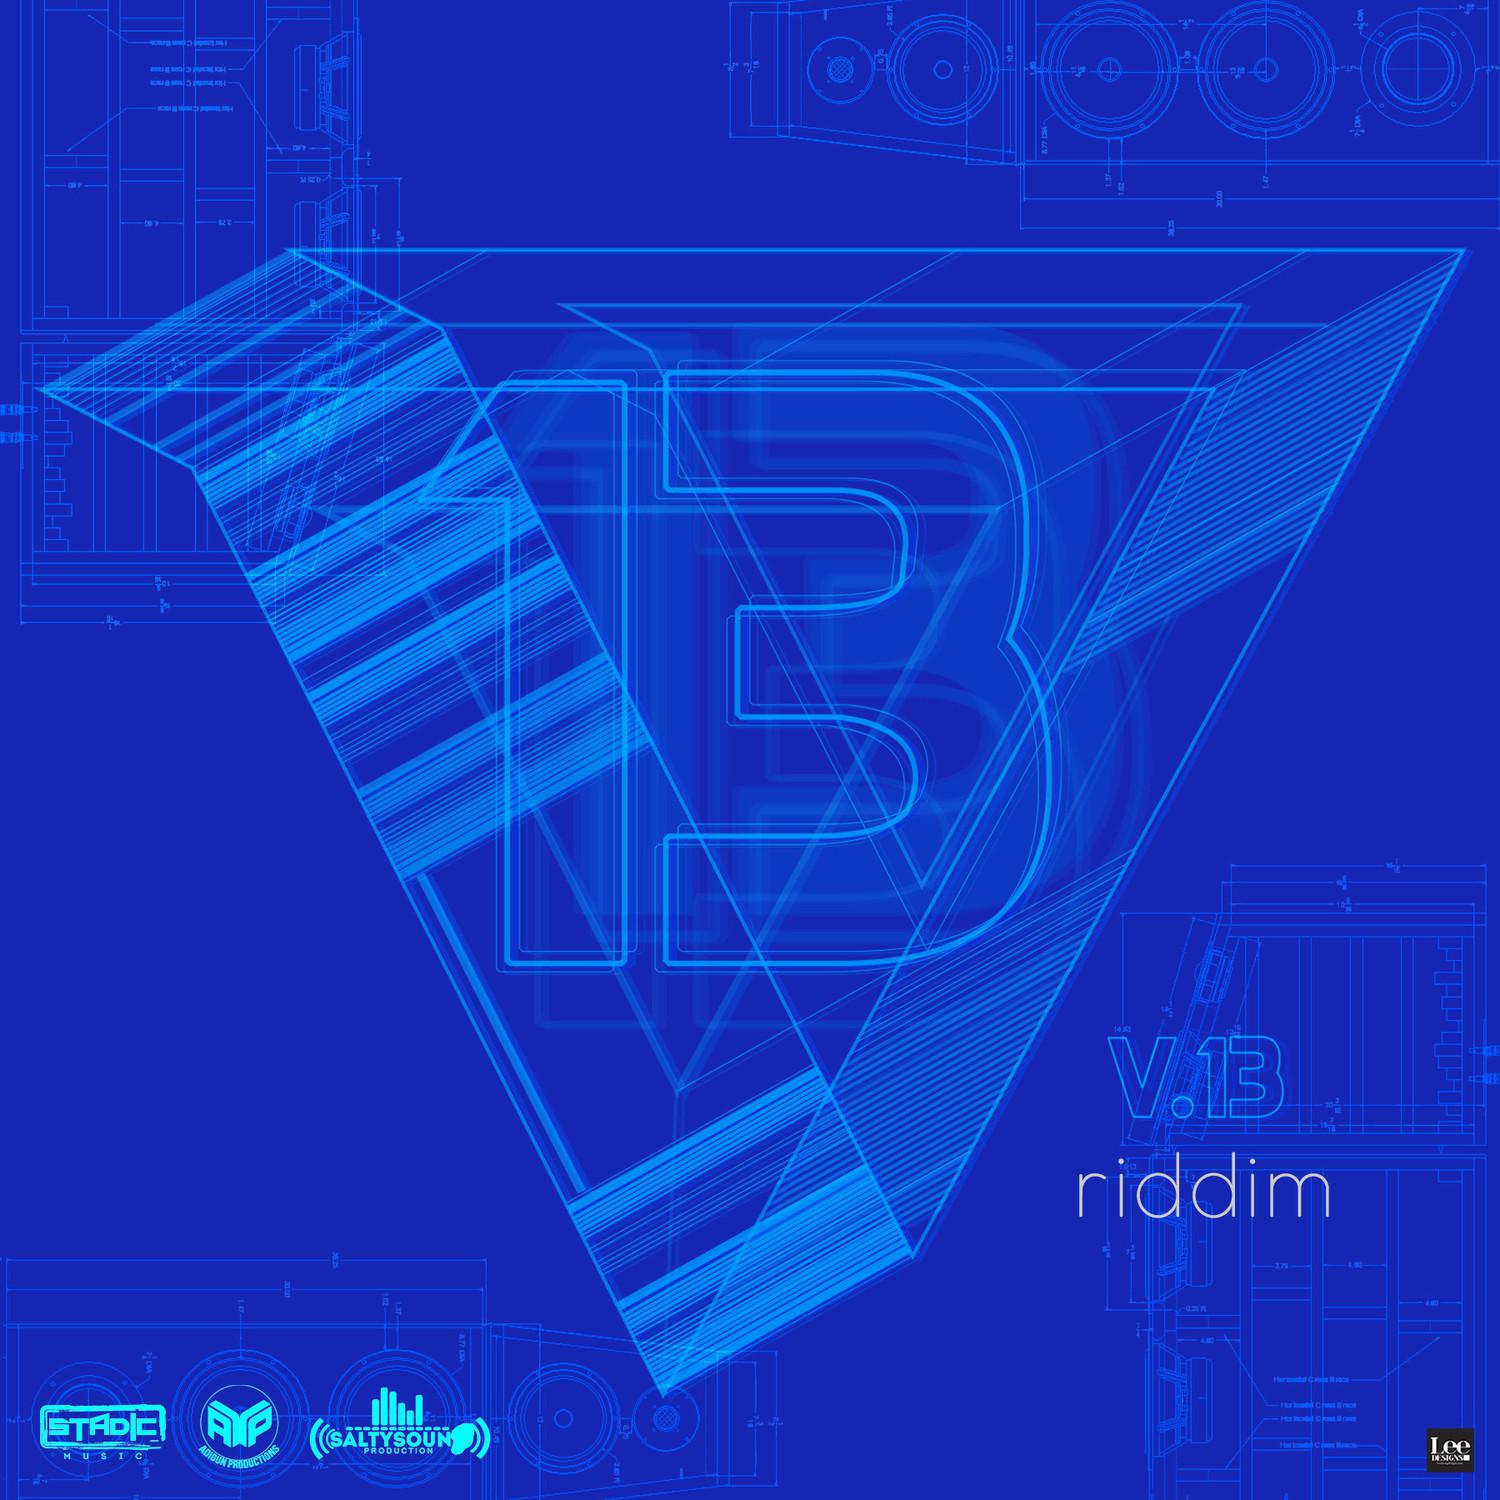 V13 Riddim (Instrumental)